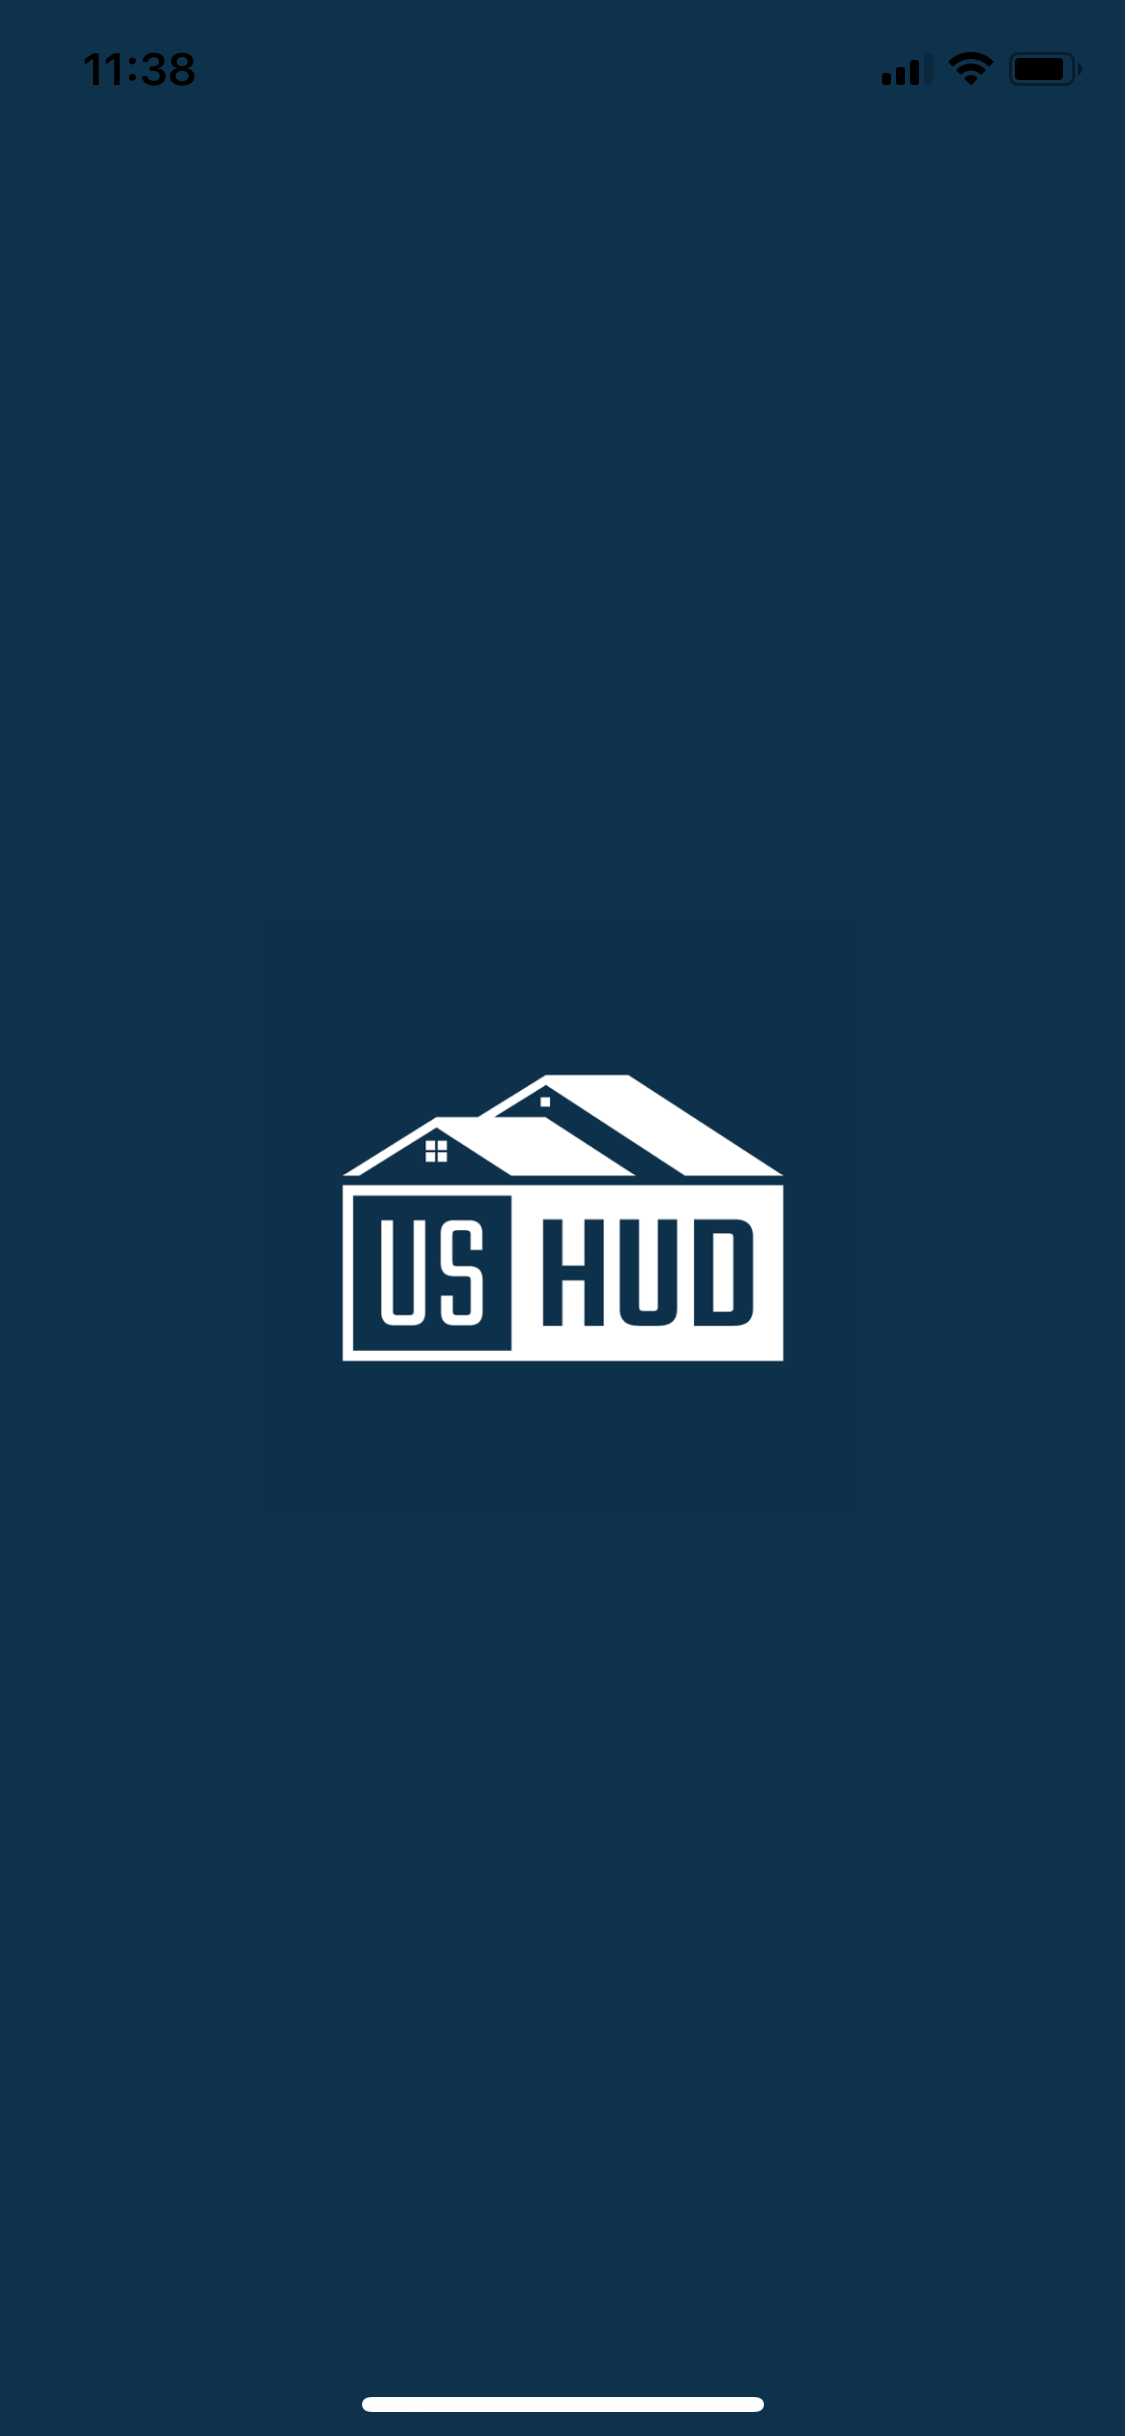 ushud logo